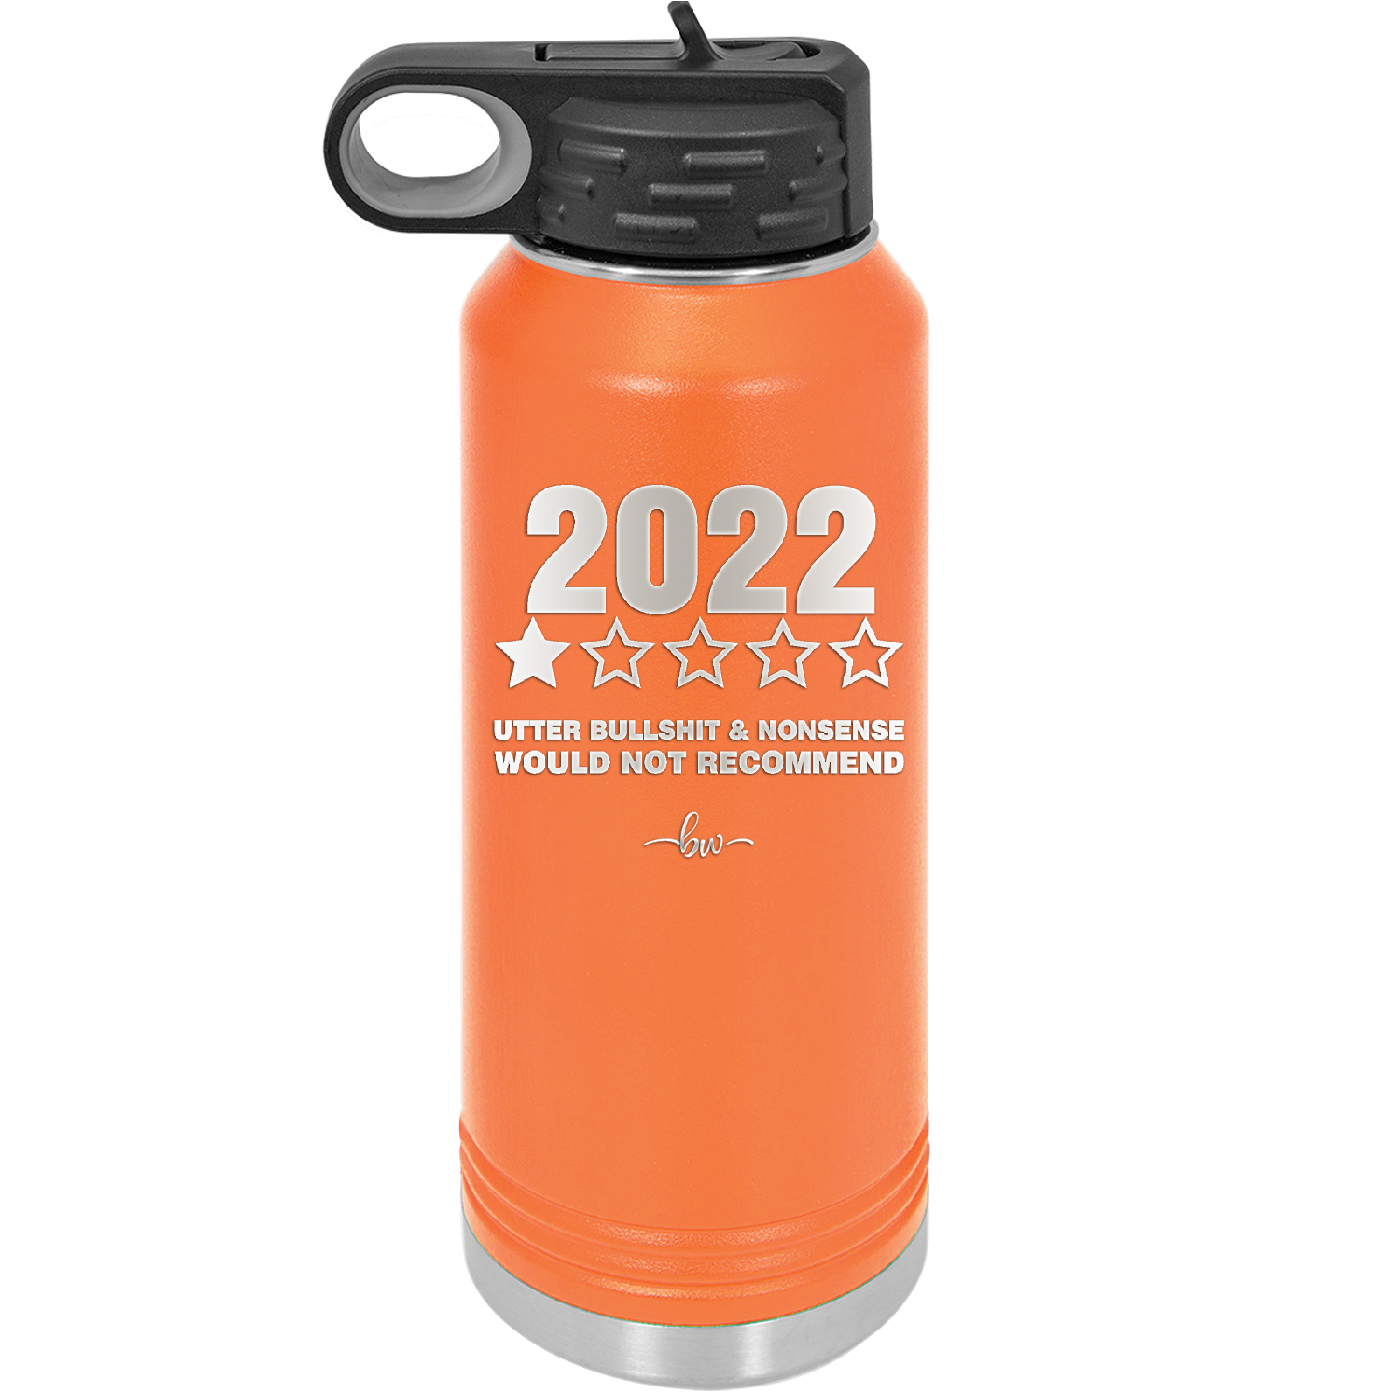 32 oz water bottle  2022 utter bullshitt and nonsense would not recommend- orange